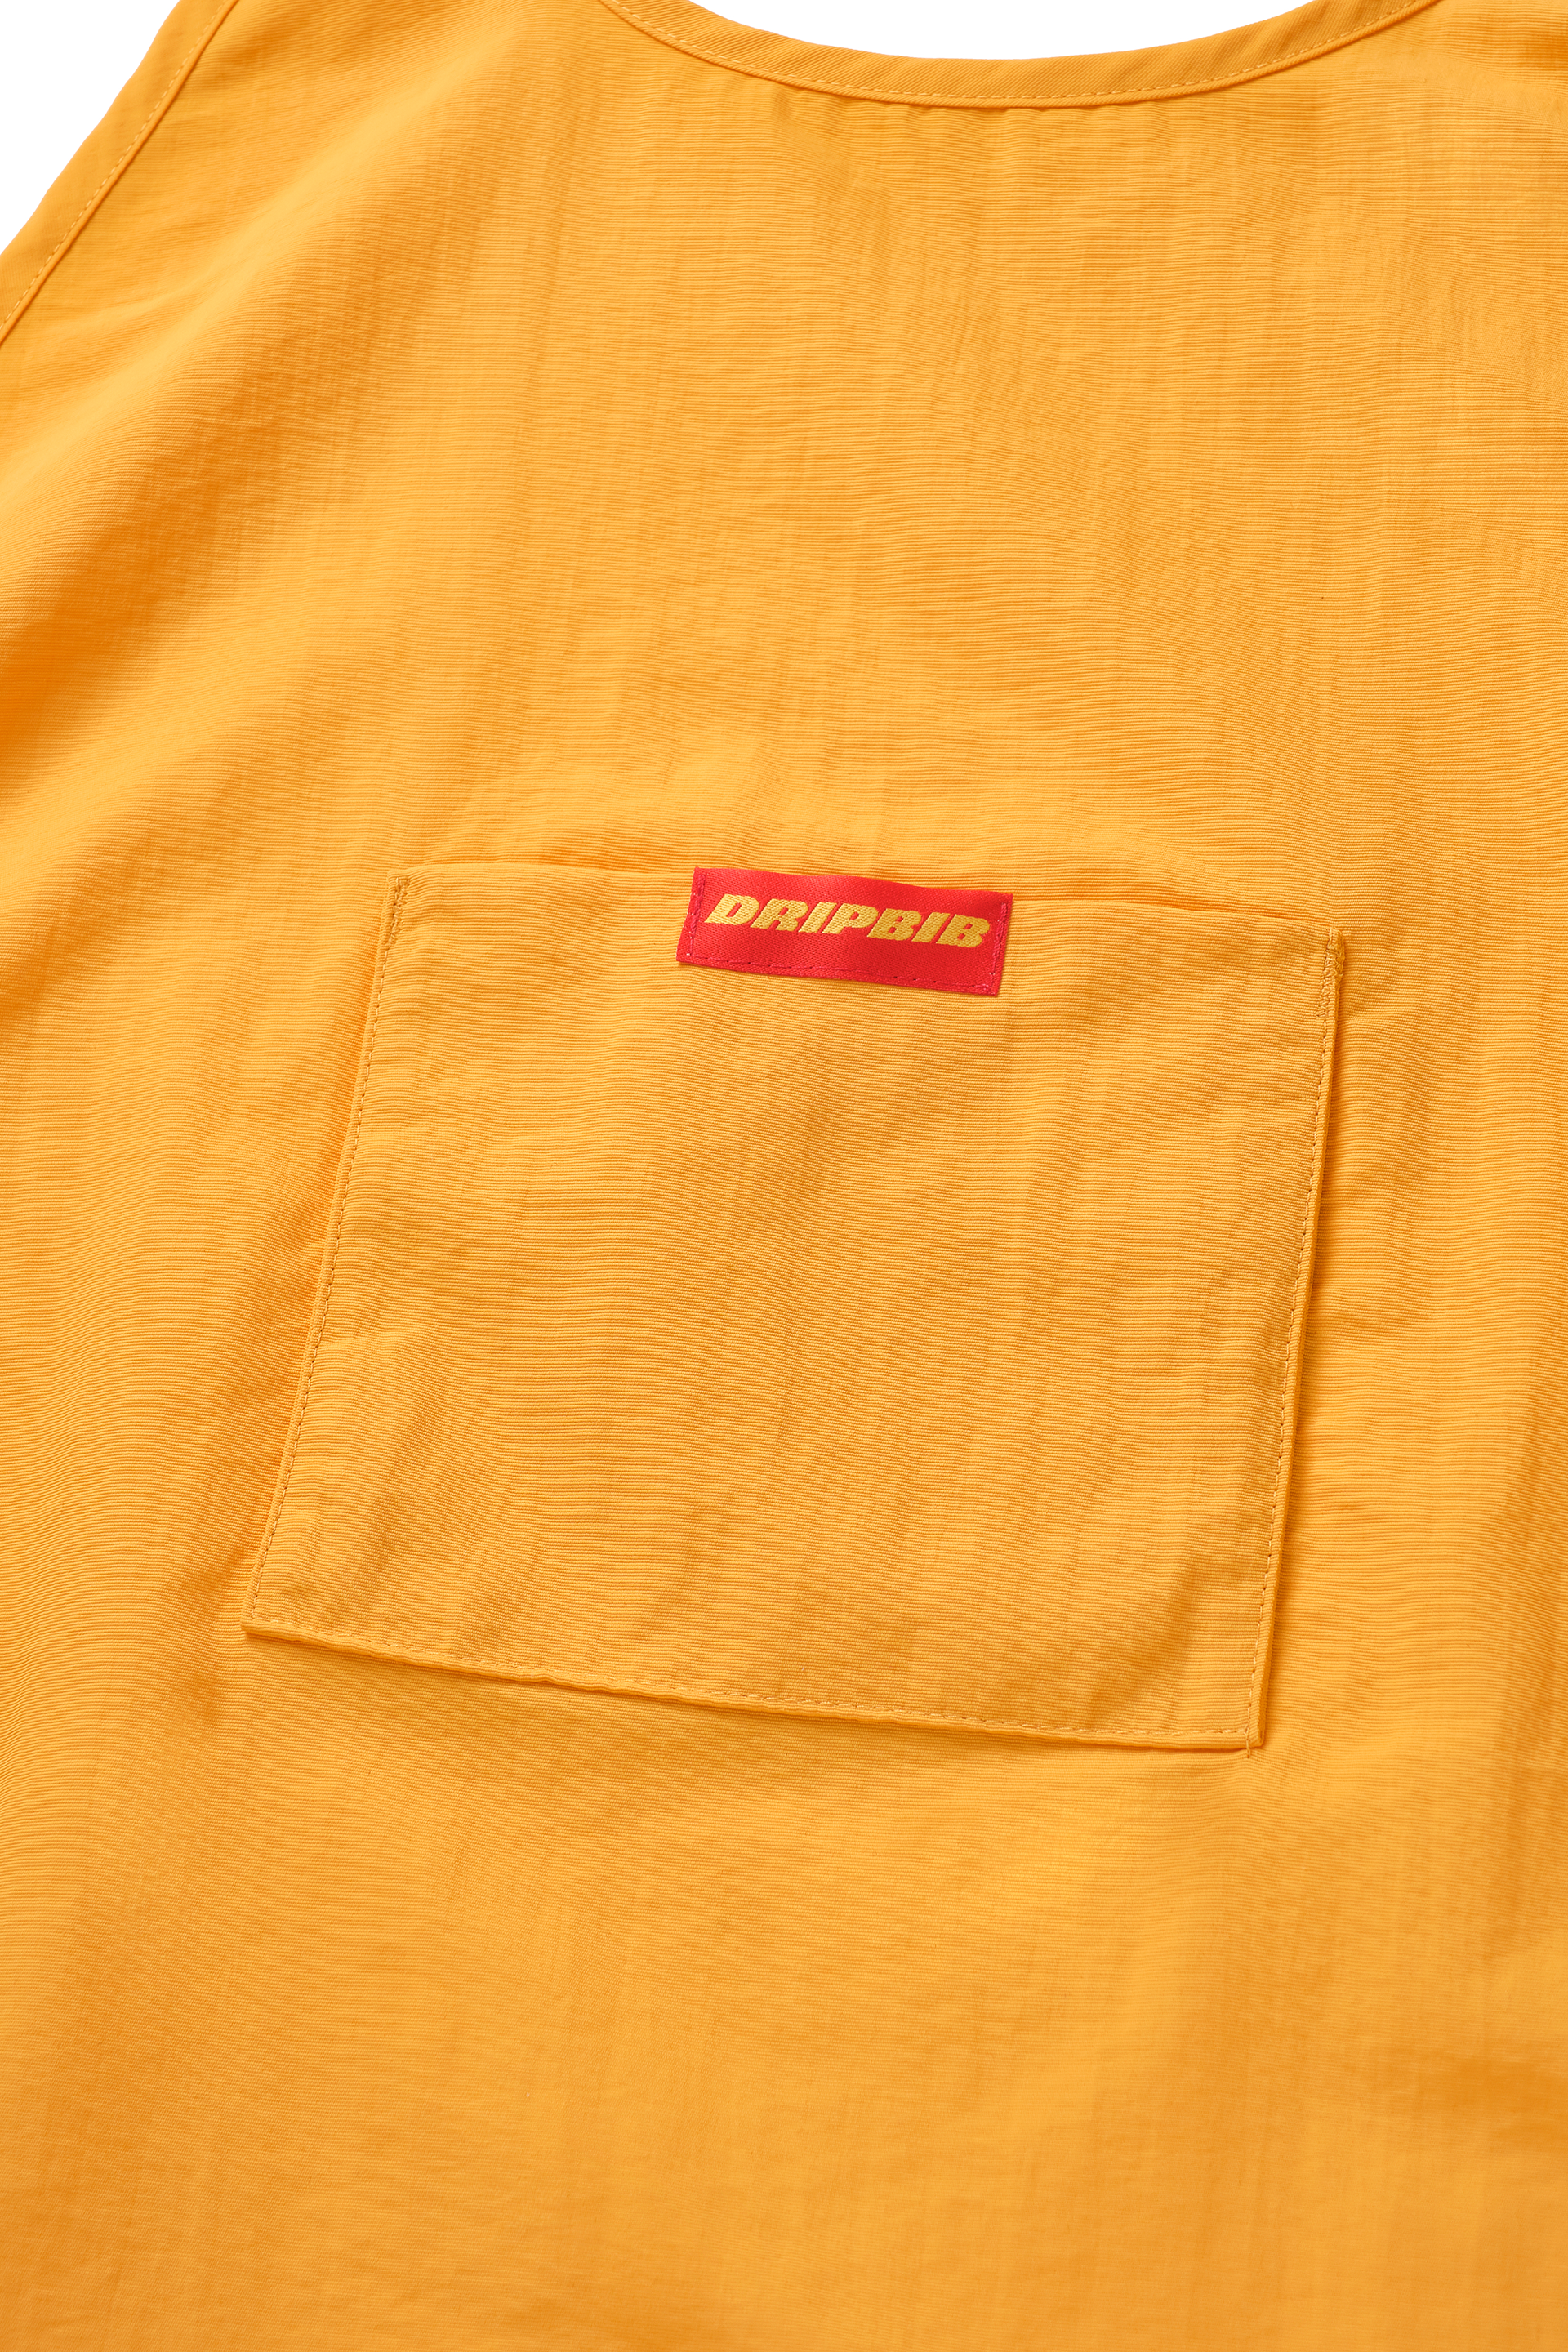 Dripbib - Yellow Mustard